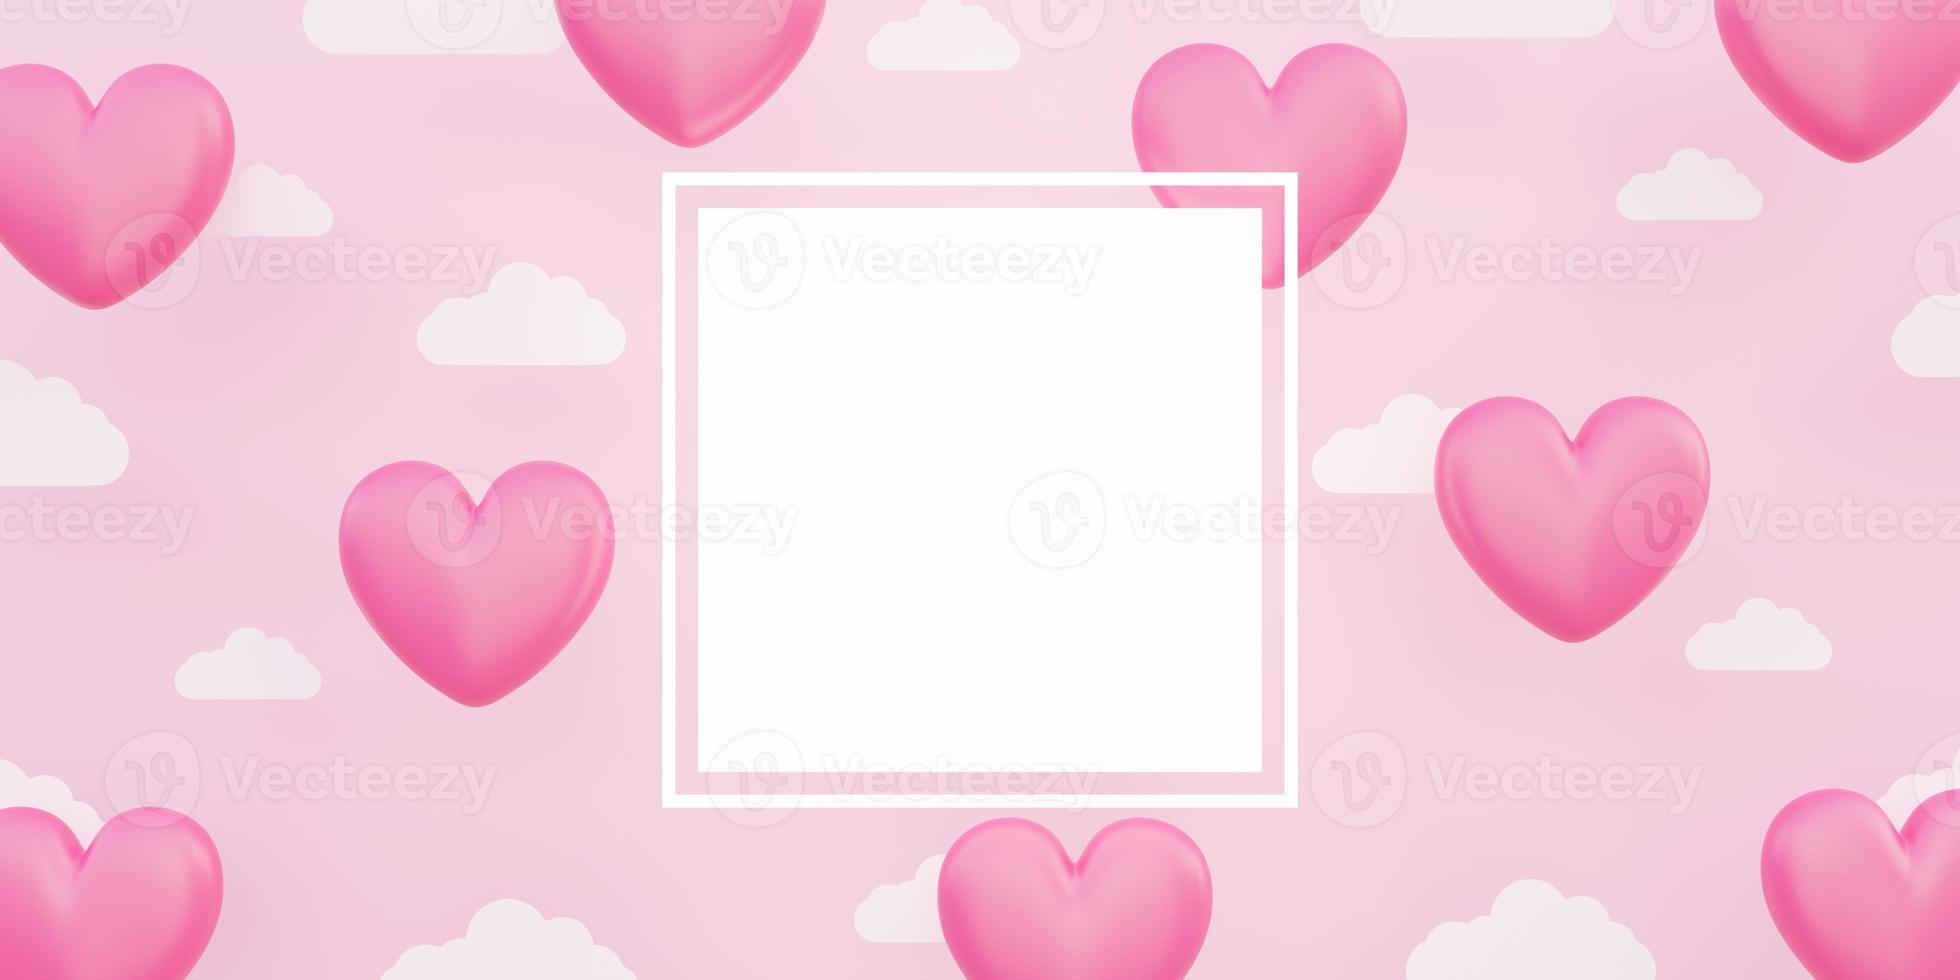 dia dos namorados, ilustração 3D balões em forma de coração rosa flutuando no céu com nuvem de papel foto